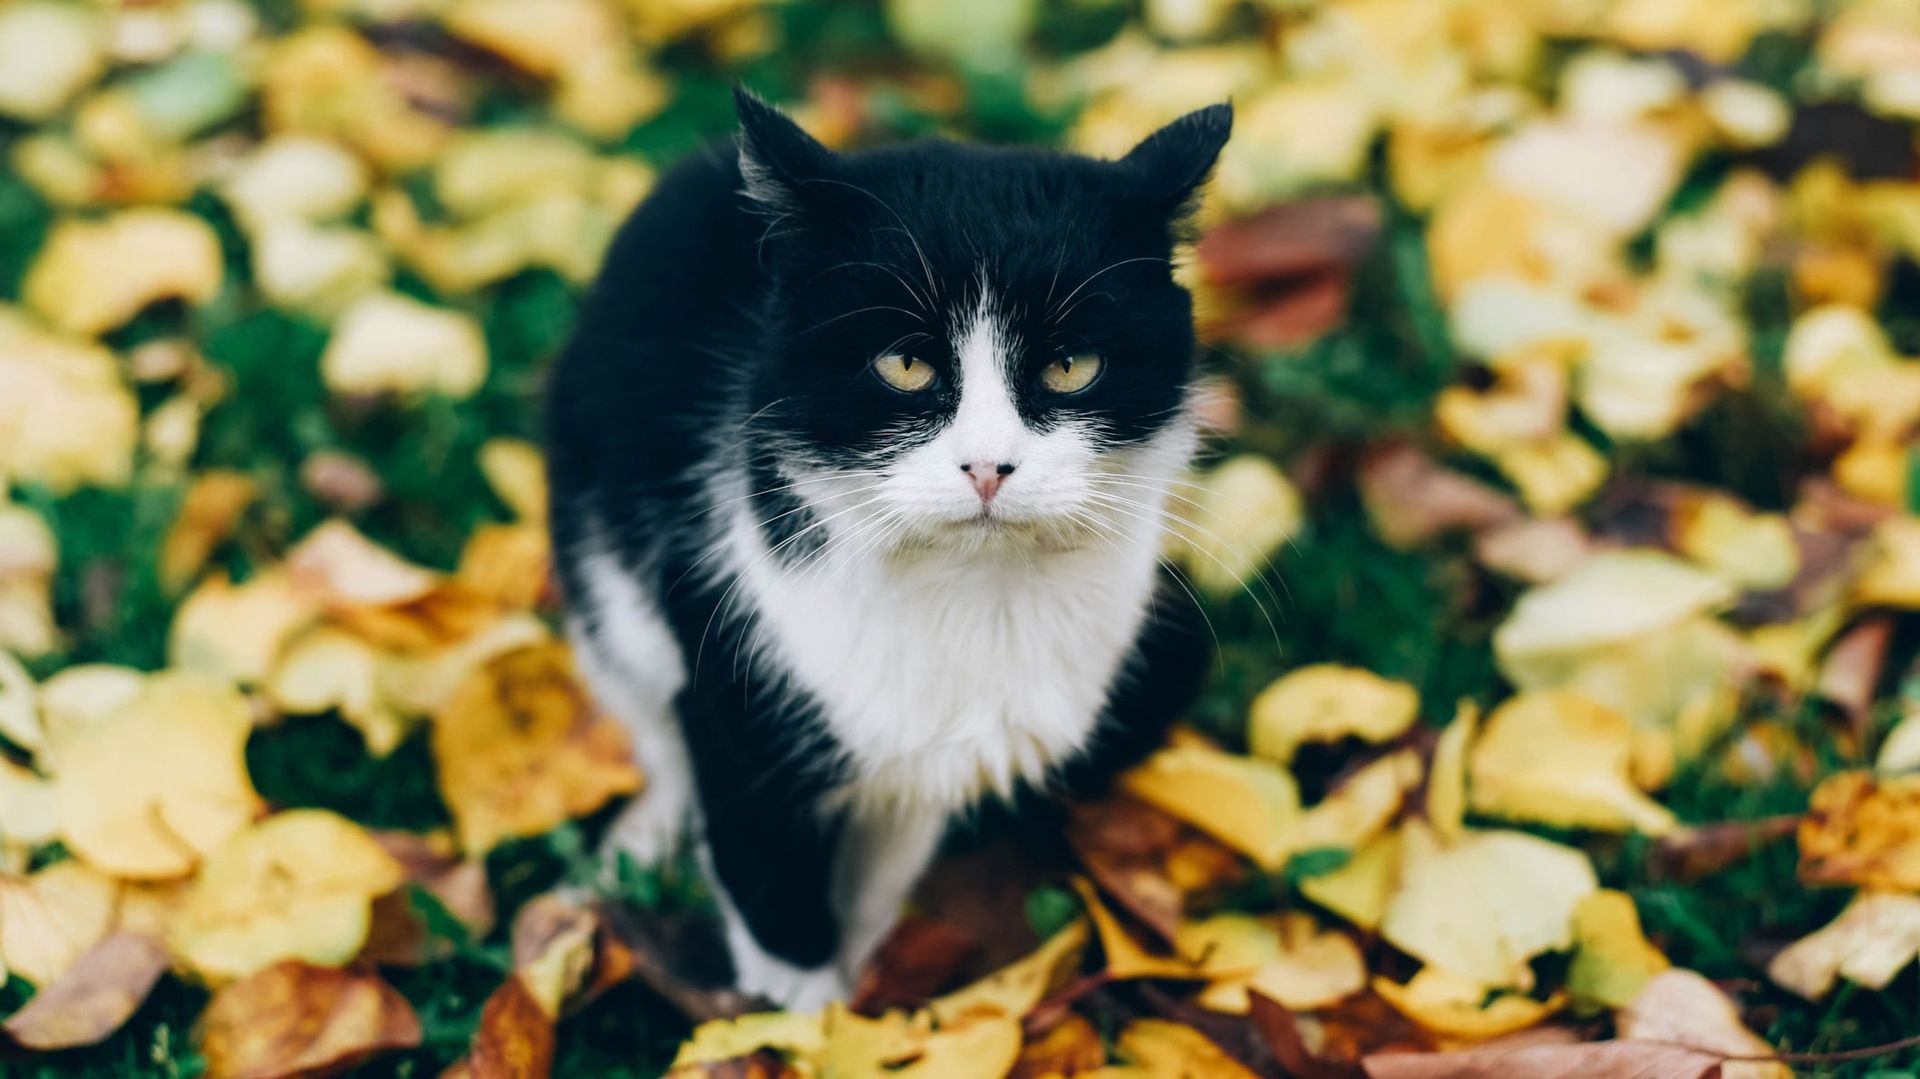 Votre chat est-il un psychopathe ? Des scientifiques ont créé un test pour le savoir (si, c’est vrai !)